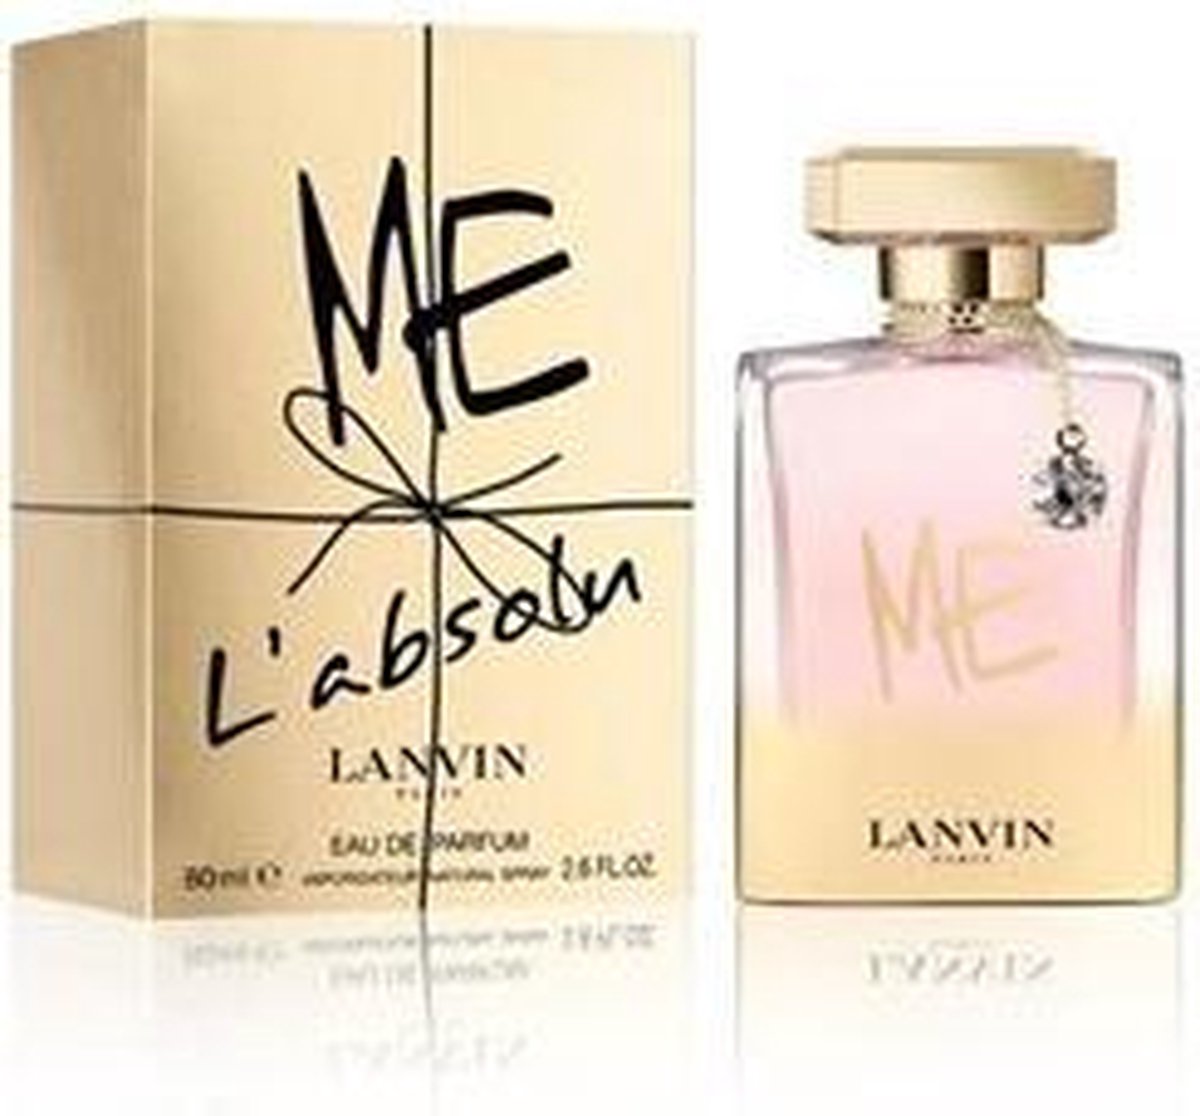 Lanvin - Eau de parfum - Me L'Absolu - 80 ml